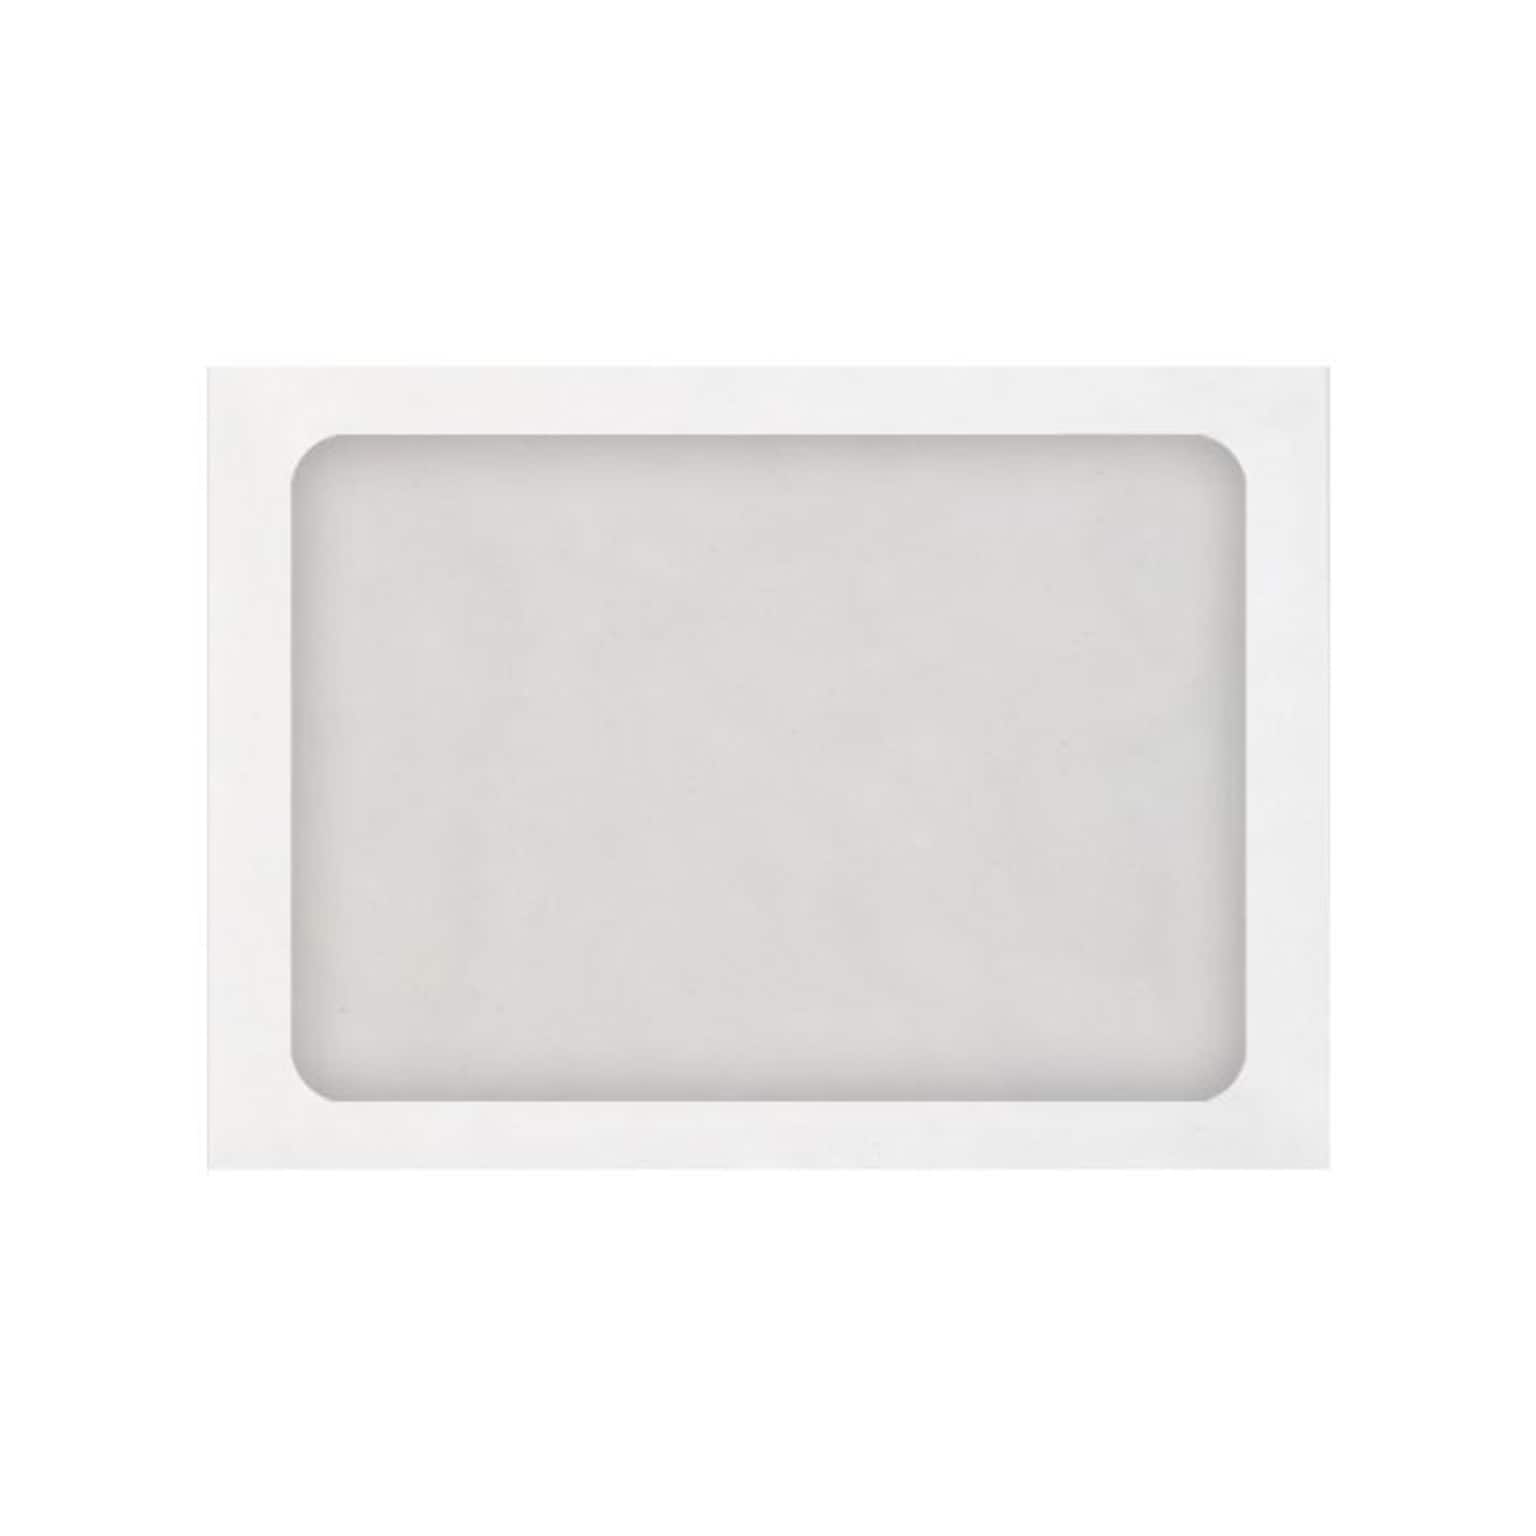 LUX Self Seal A7 Window Envelope, 5 1/4 x 7 1/4, White, 50/Box (A7FFW-28W-50)